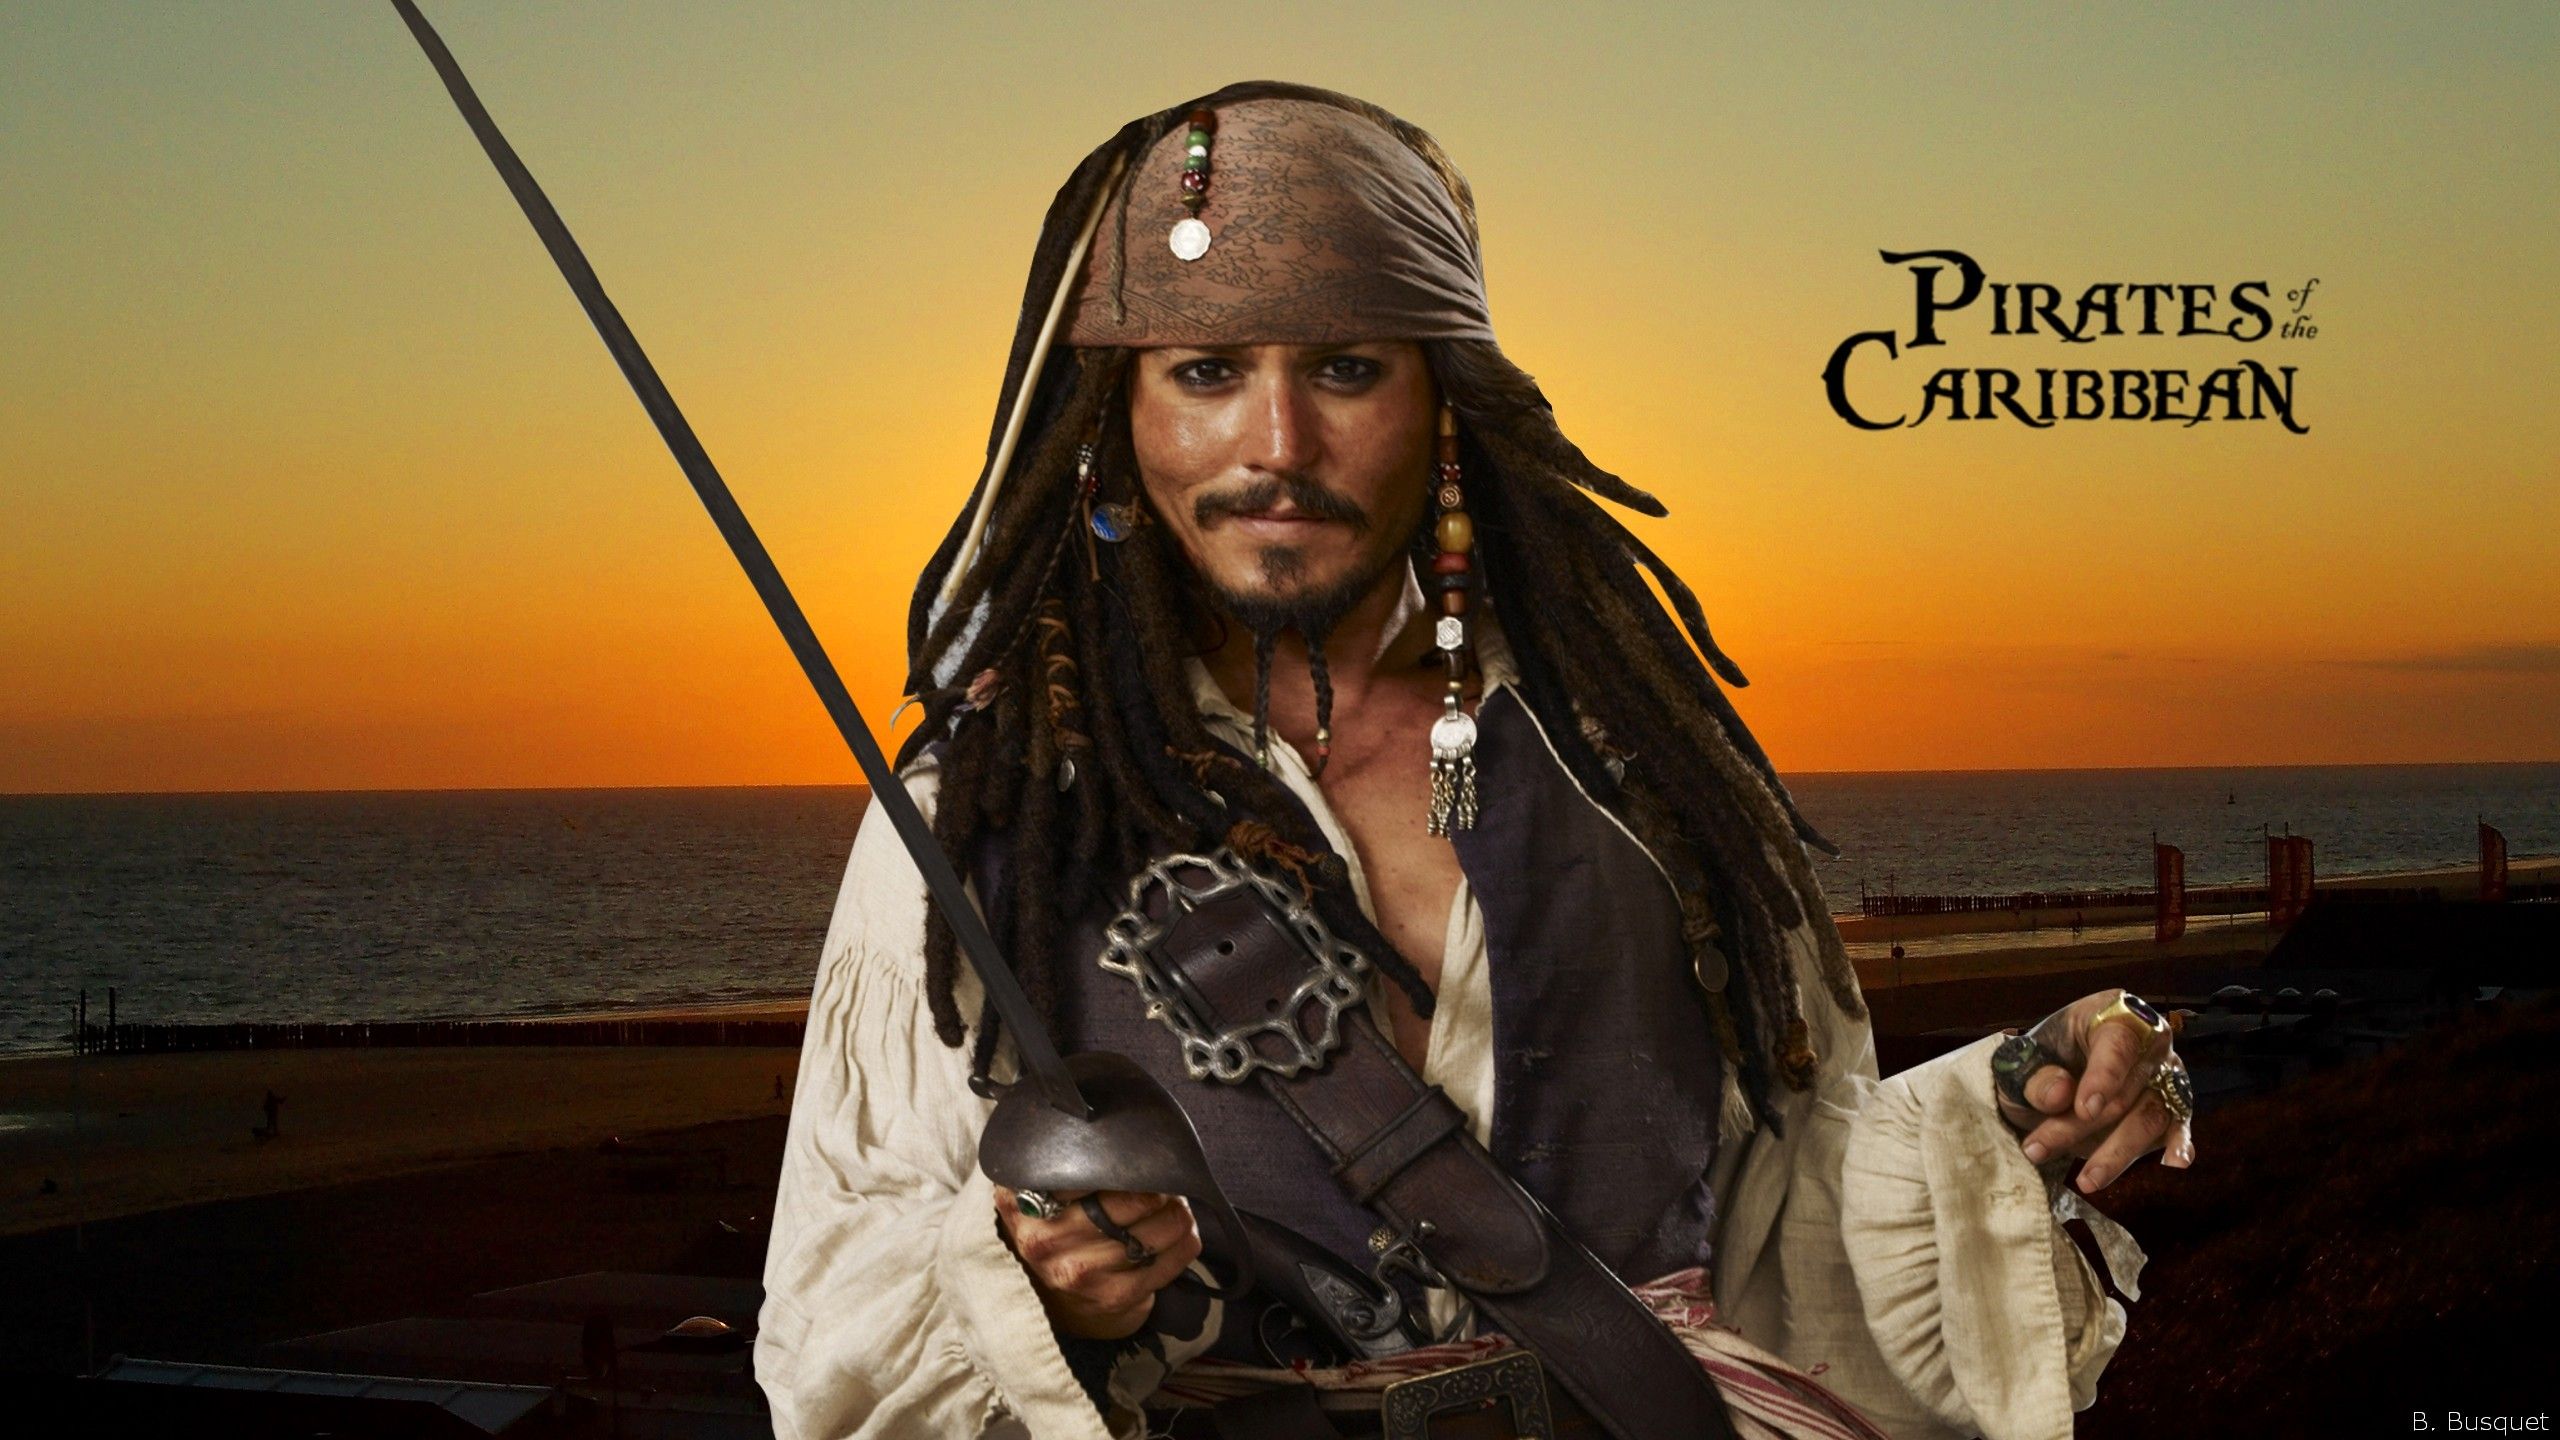 Fondos de Piratas del Caribe - Barbaras HD Wallpapers